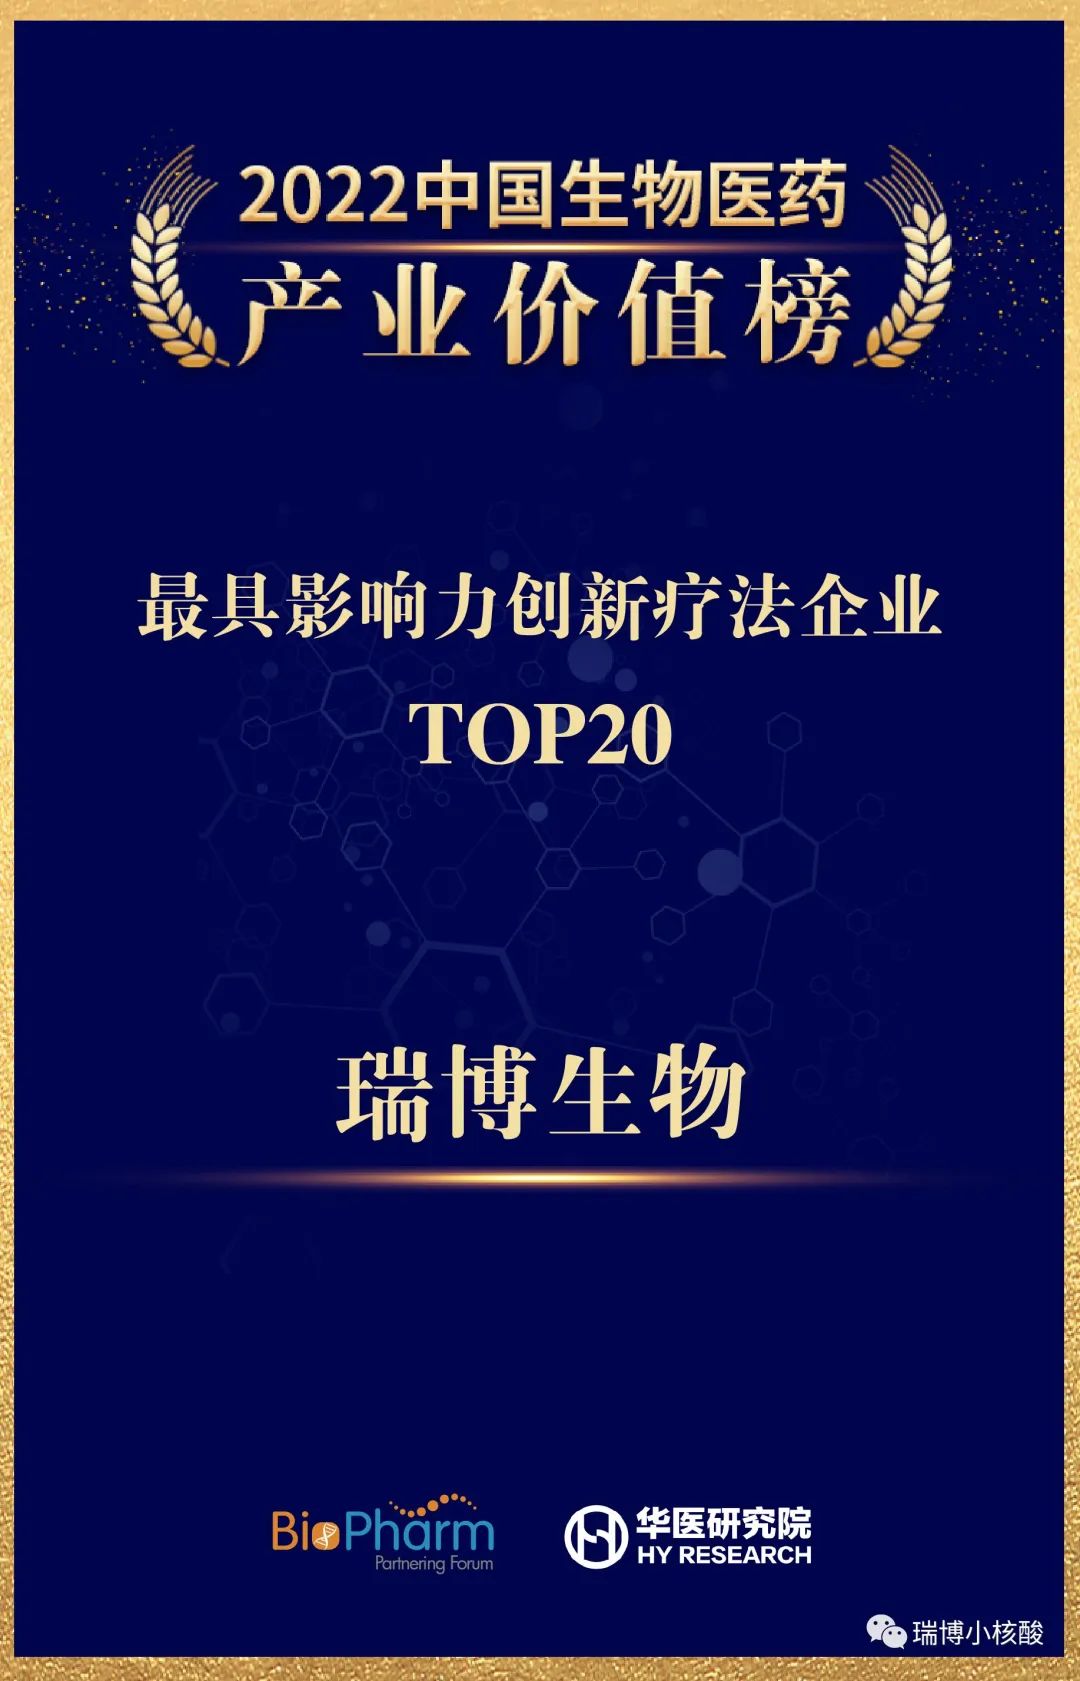 瑞博生物榮登2022中國生物醫藥產業價值榜——最具影響力創新療法企業TOP20